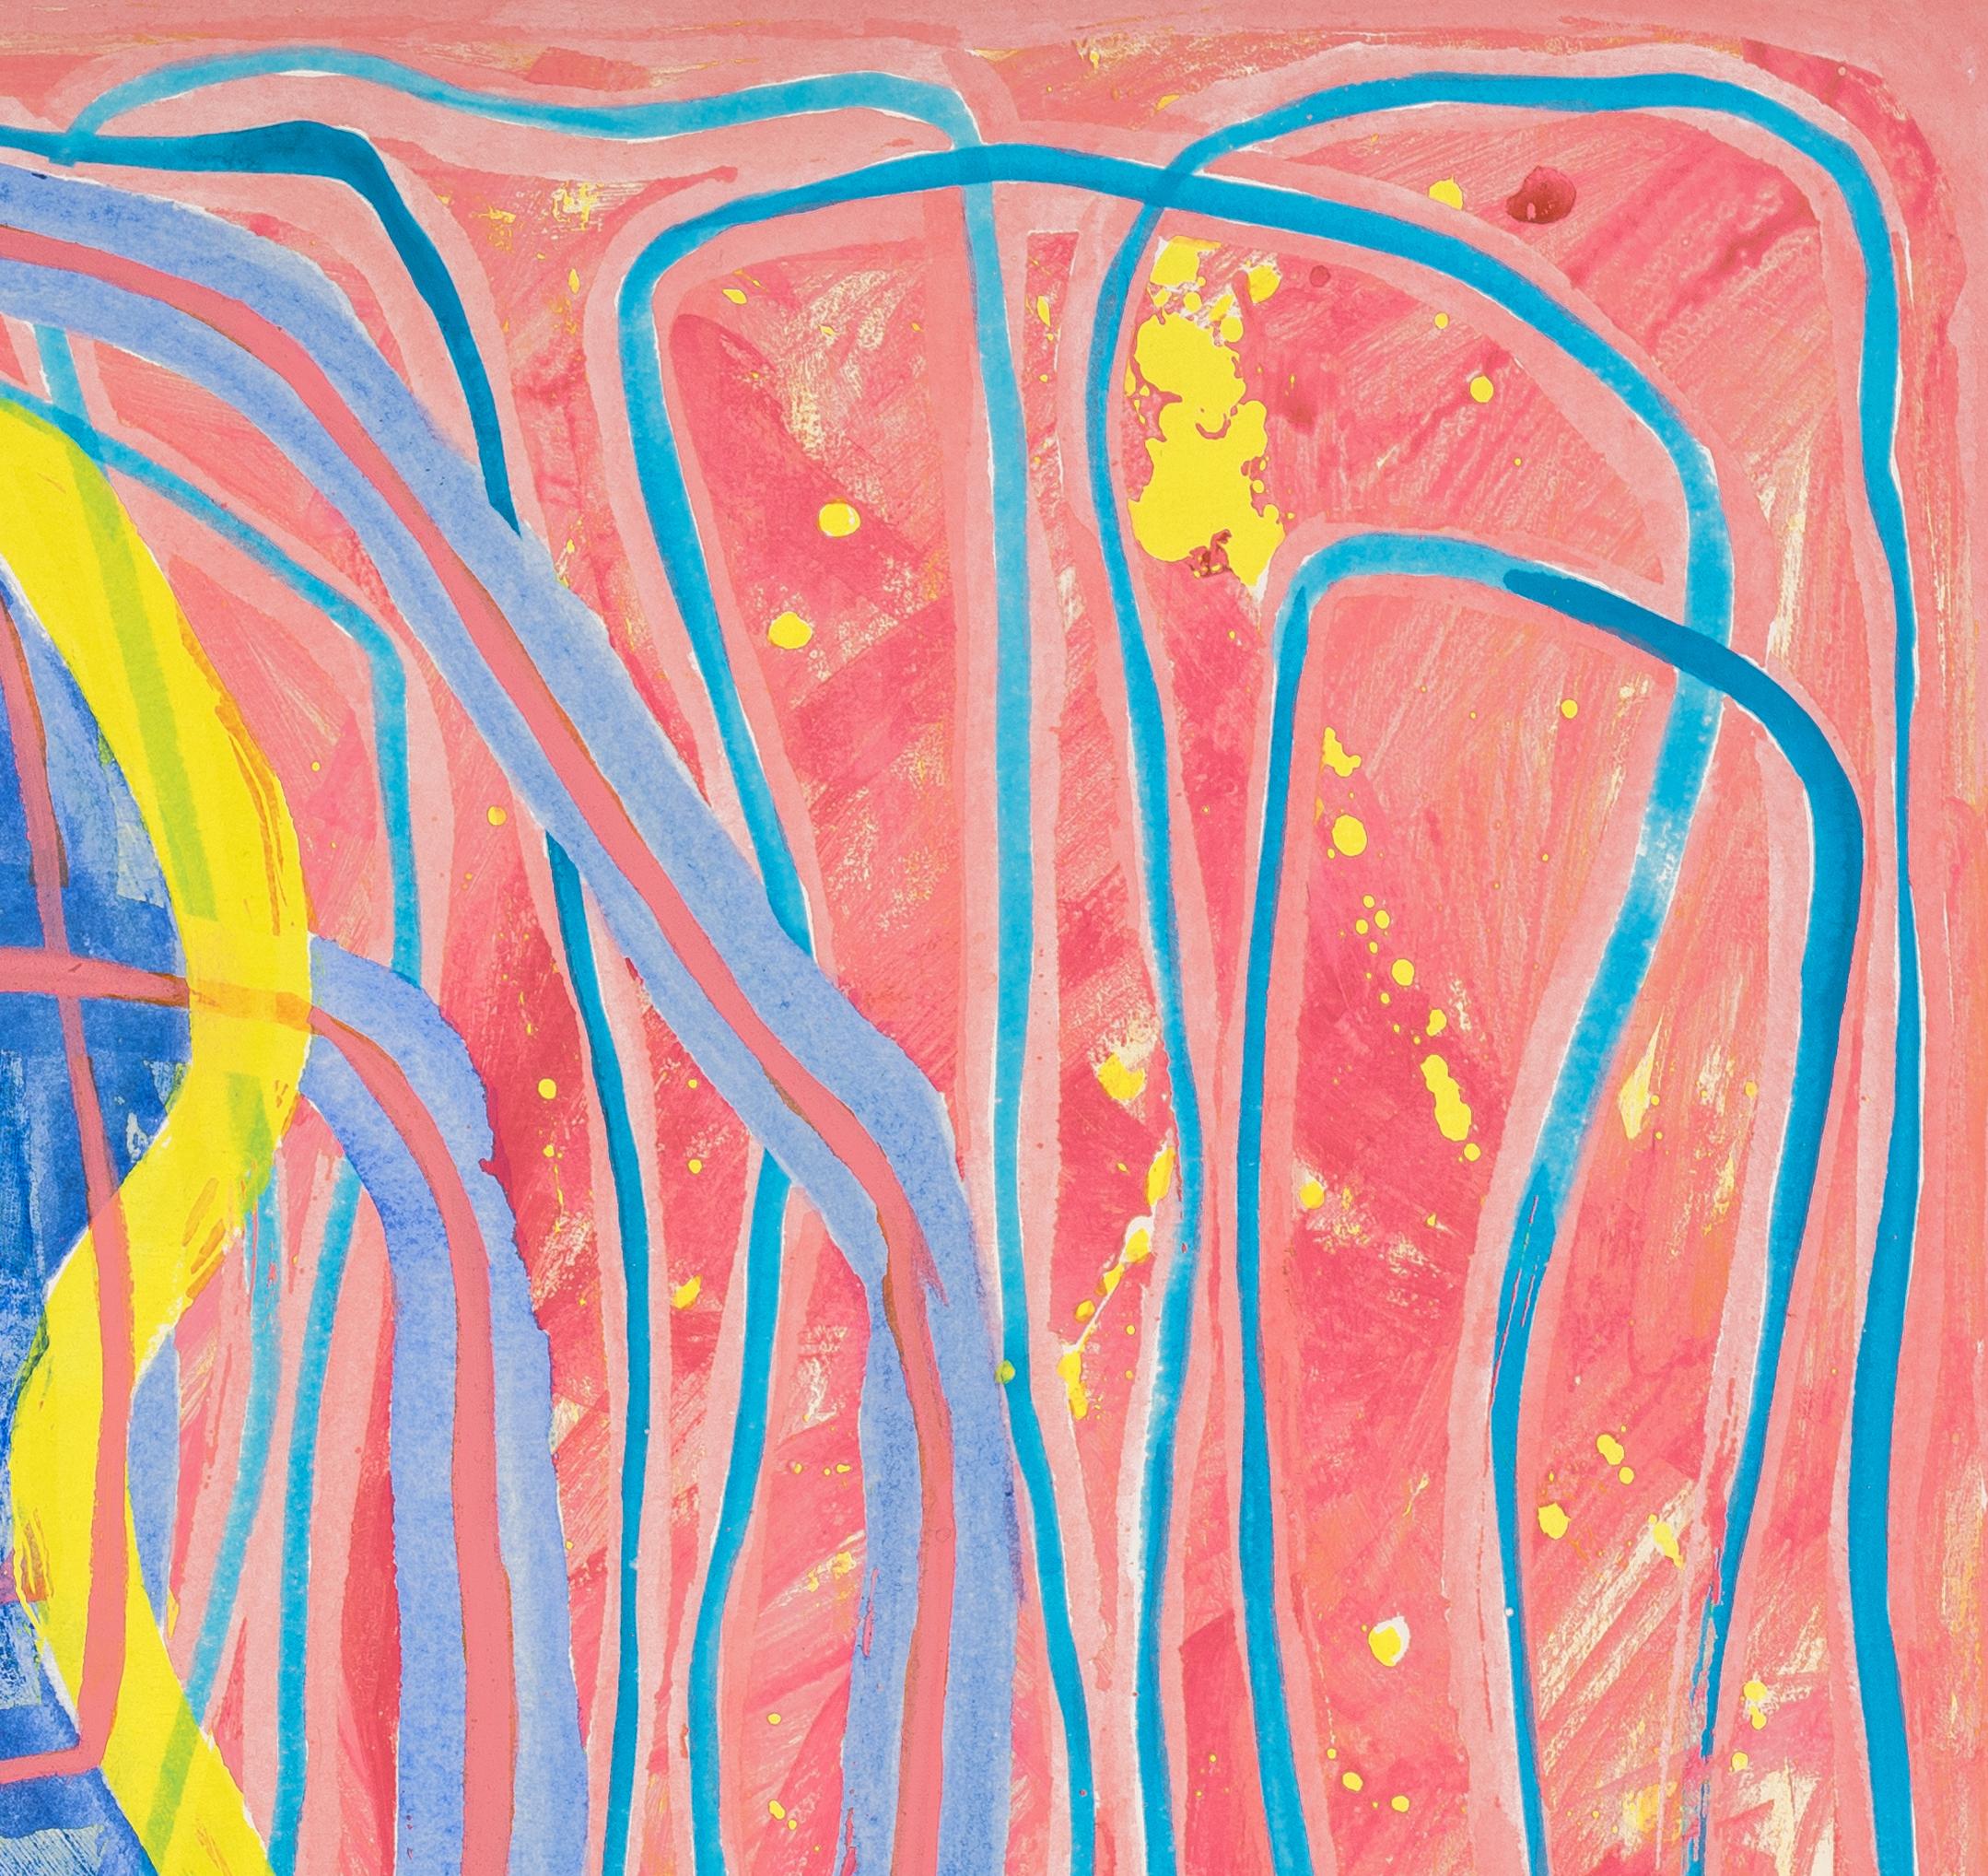 0103: zeitgenössisches, abstraktes, gestisches Gemälde mit gelben, rosa und blauen Linien – Painting von Paula Cahill